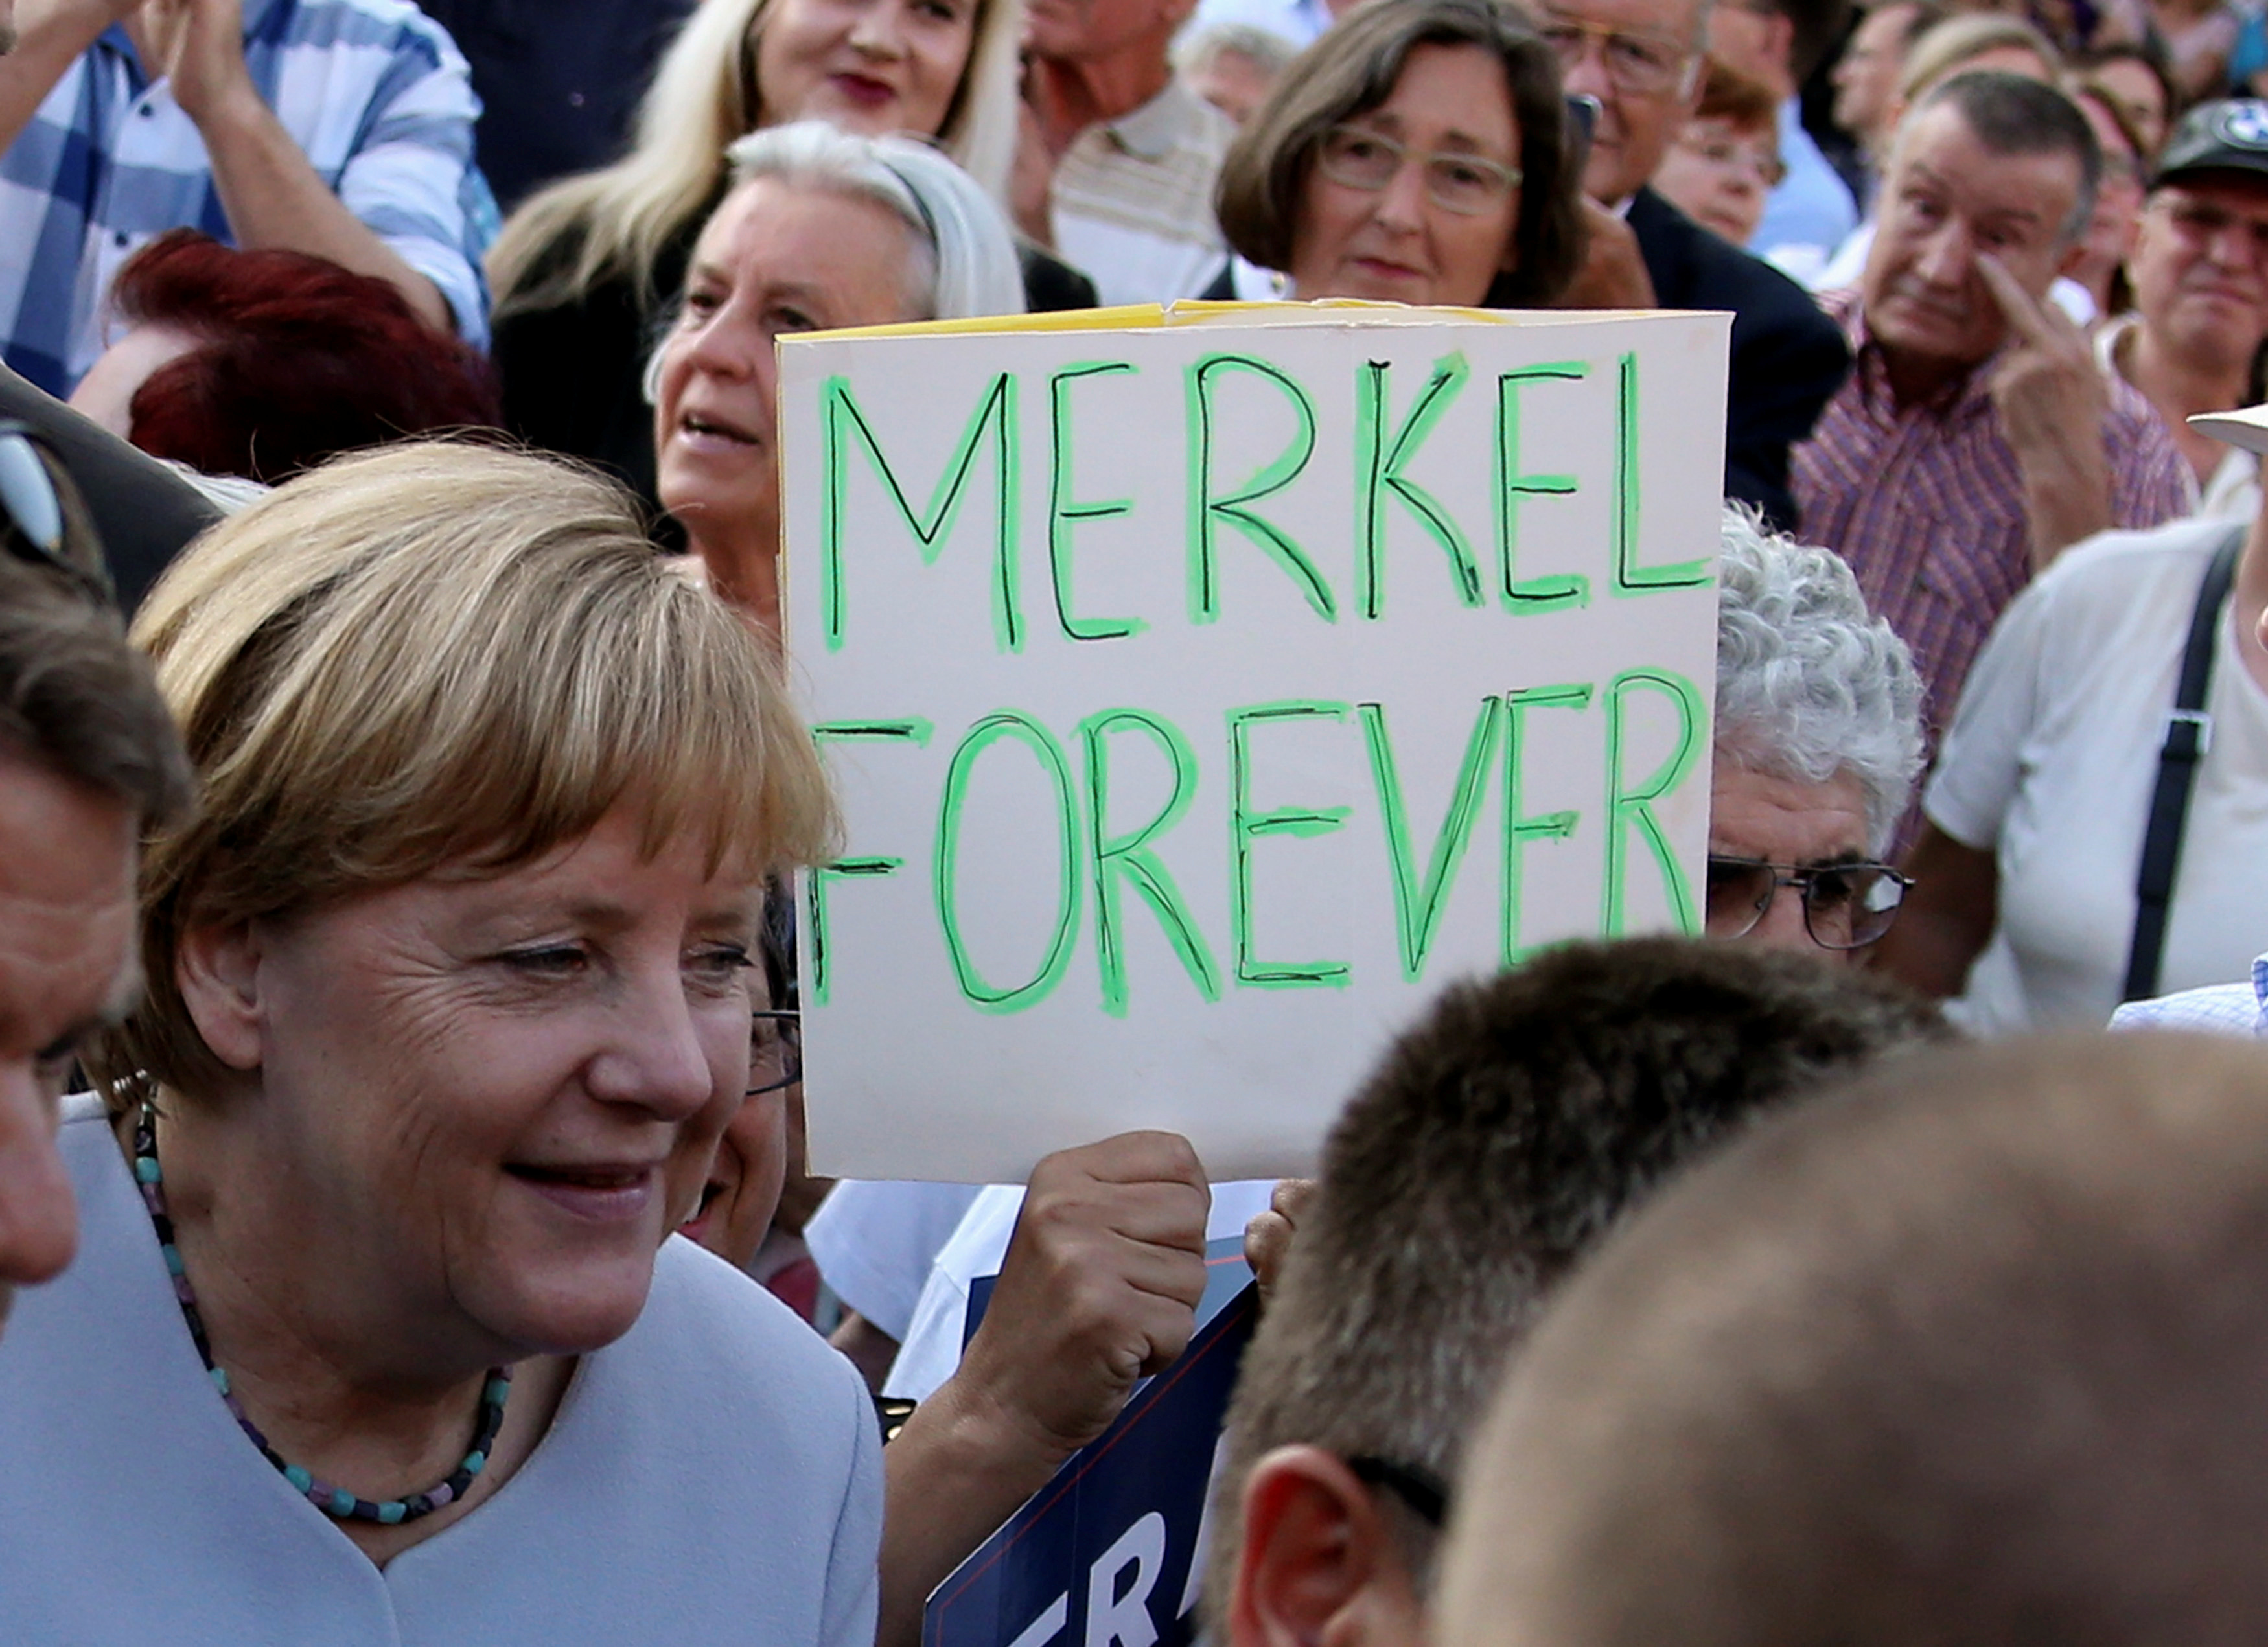 Merkel forever